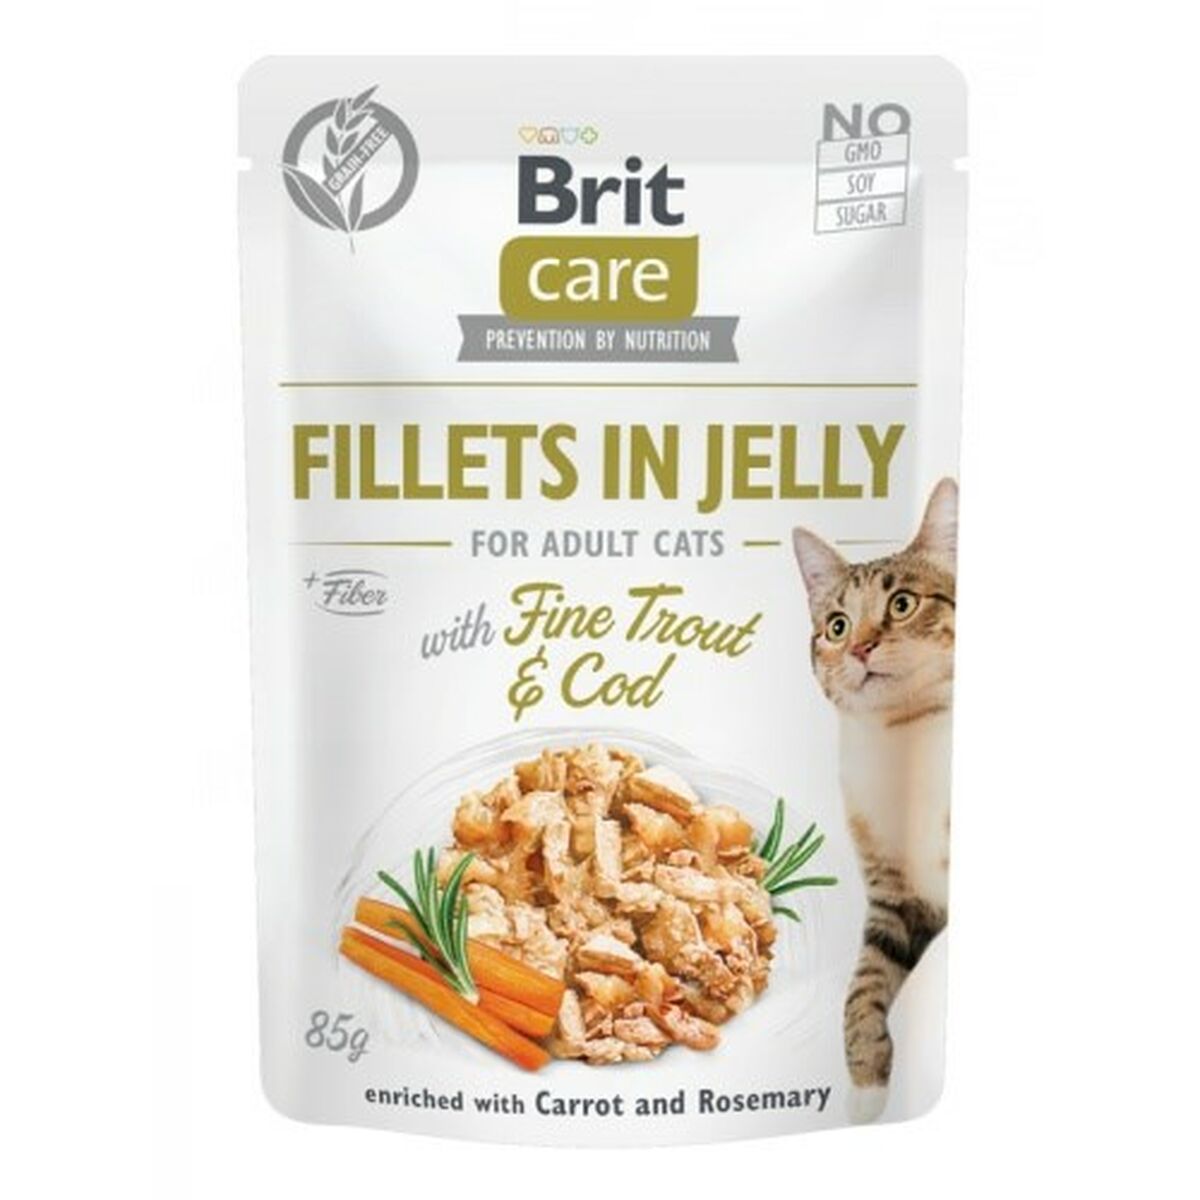 Aliments pour chat Brit Jelly Poulet